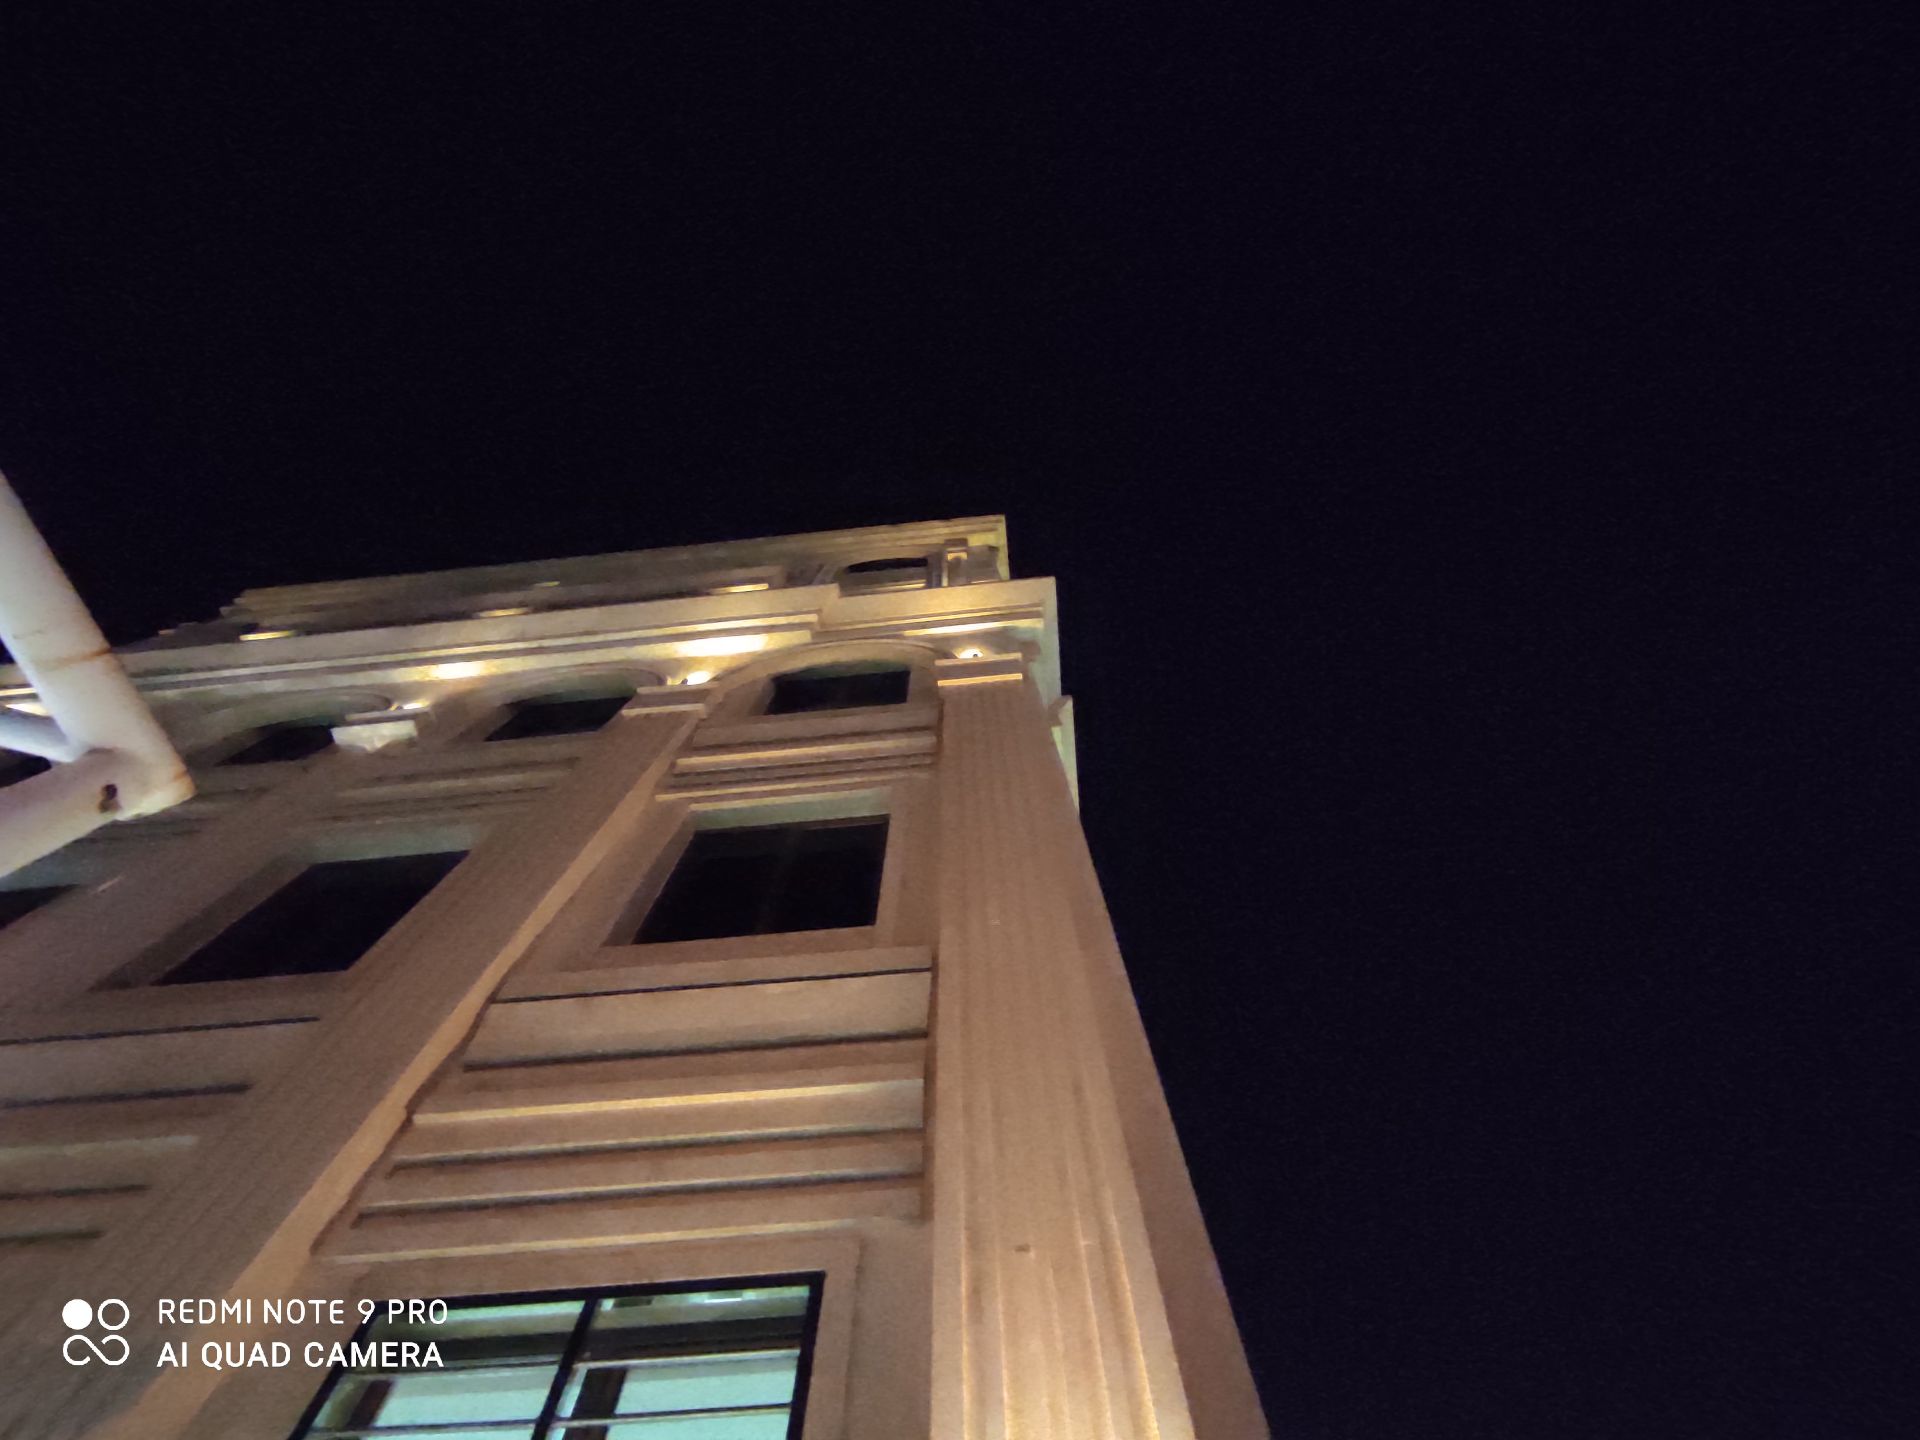 نمونه عکس ردمی نوت 9 پرو - نمای فوق عریض یک ساختمان در تاریکی